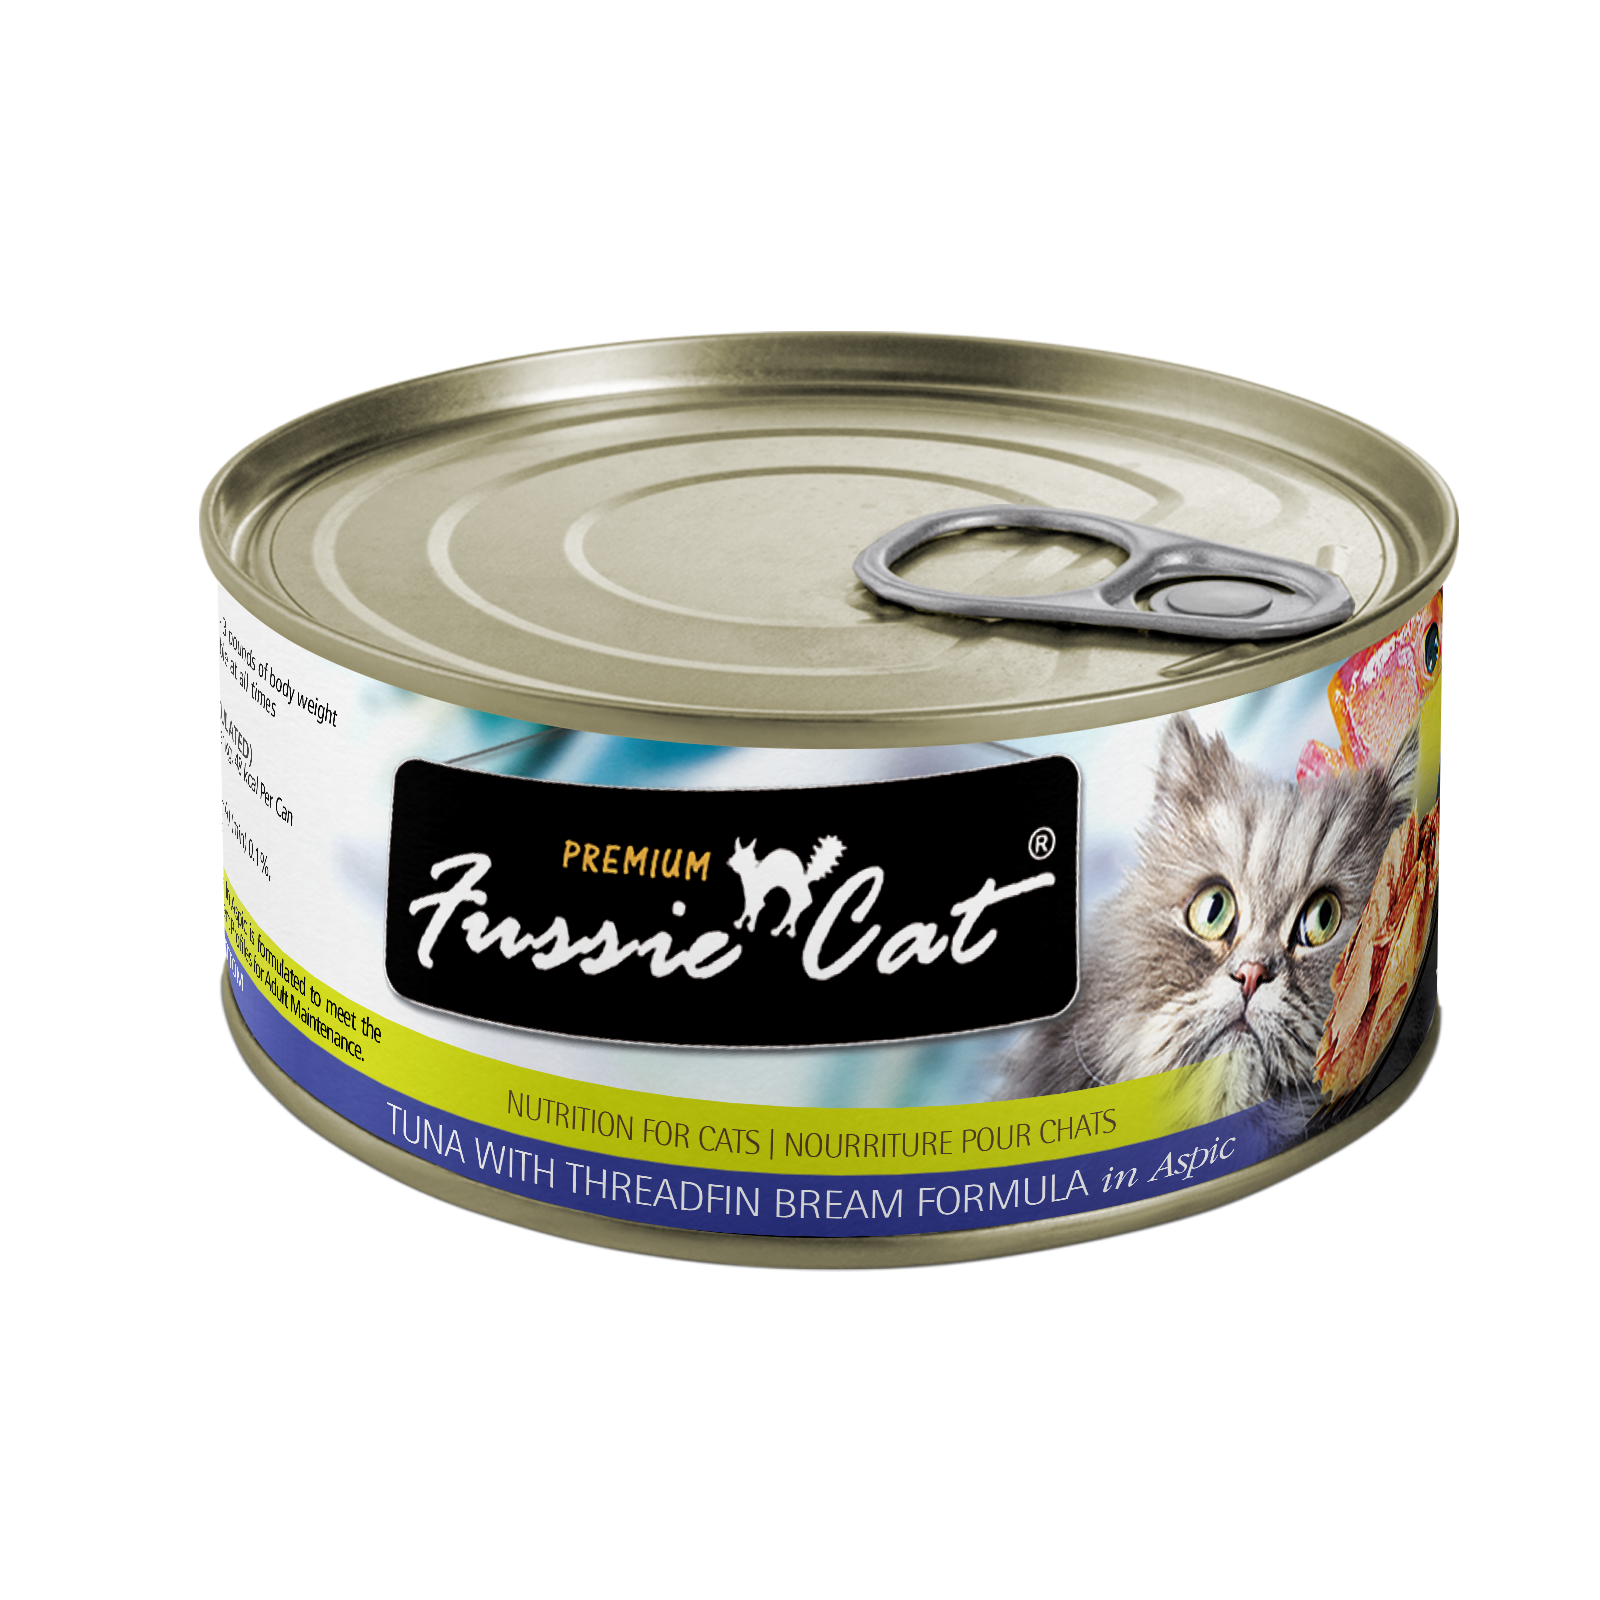 Fussie Cat Canned Cat Food Tuna & Threadfin Bream 2.8oz